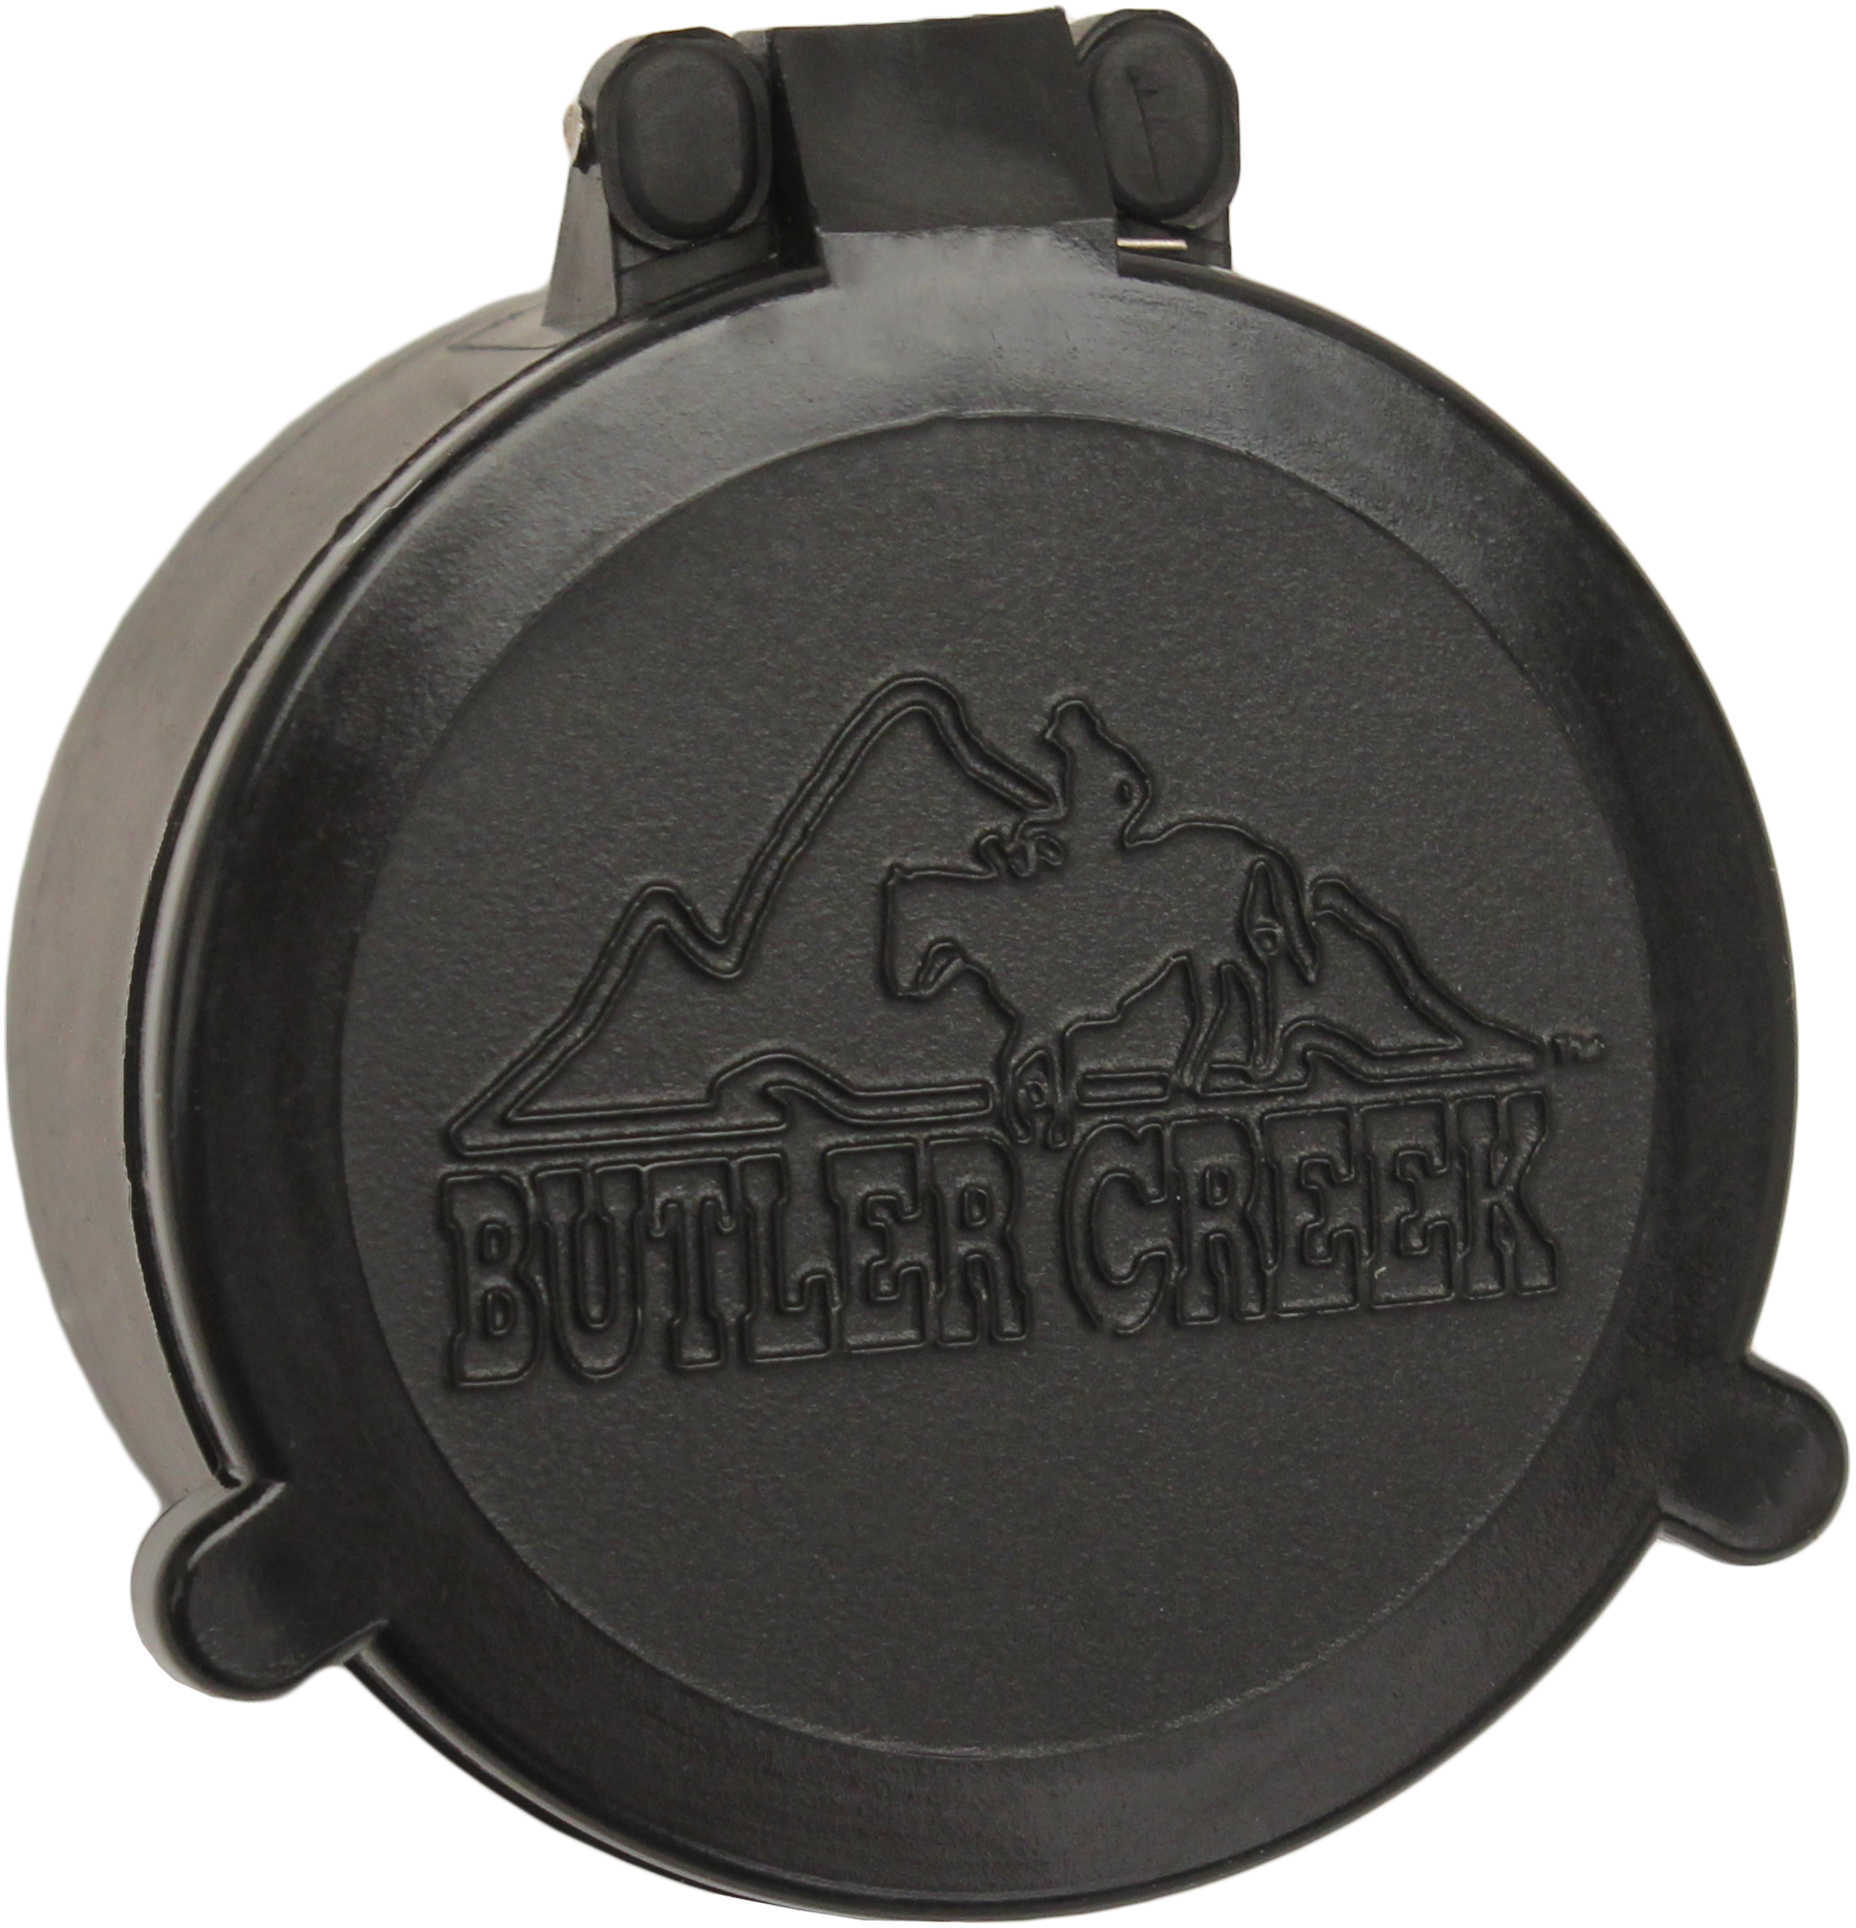 Butler Creek 30170 Flip-Open Scope Cover Objective Lens 40.90mm Slip On Polymer Black